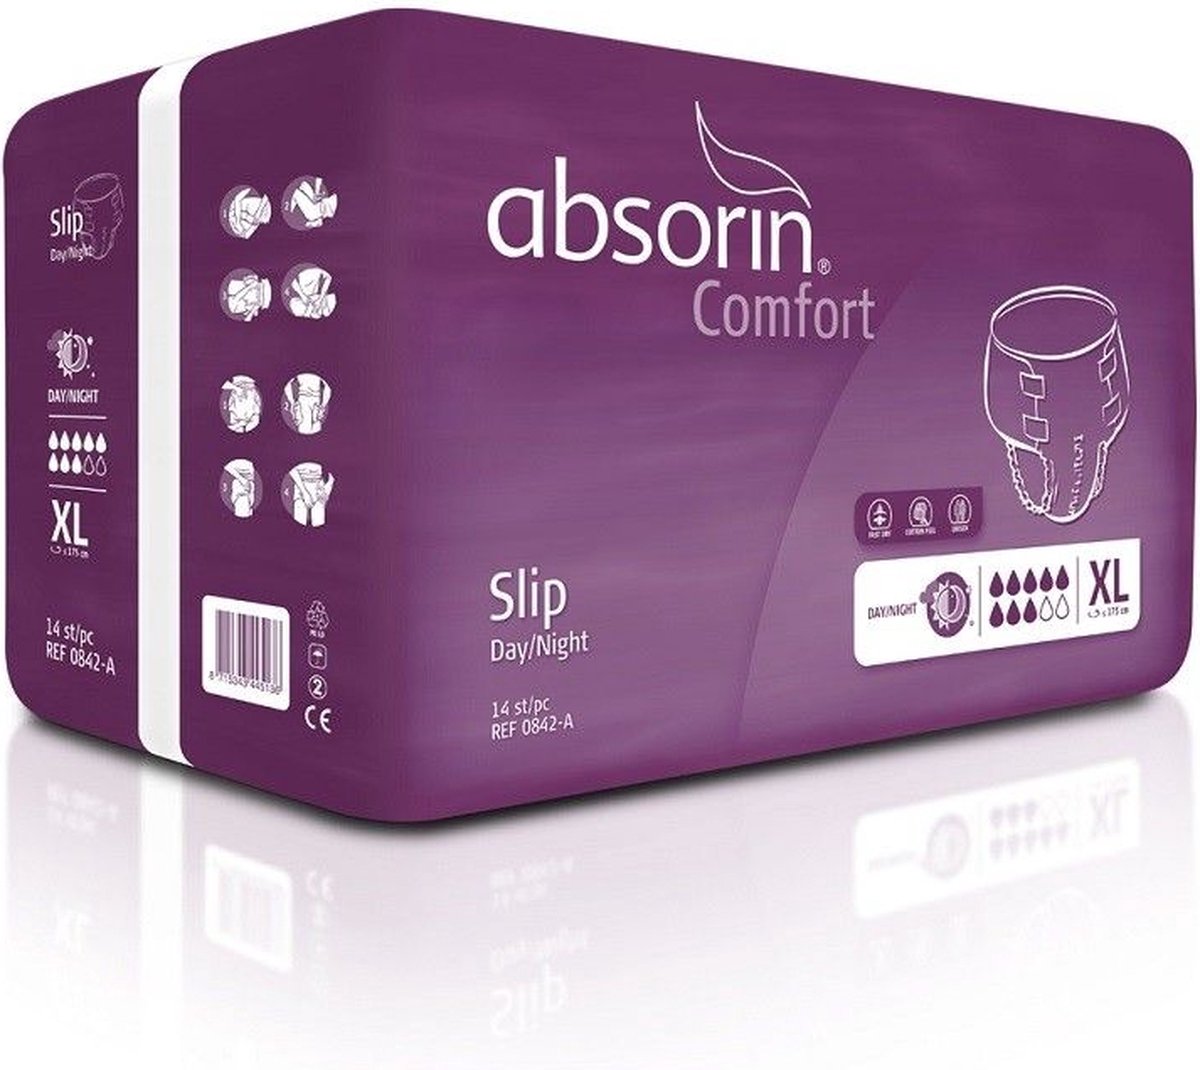 absorin comfort XL 170cm